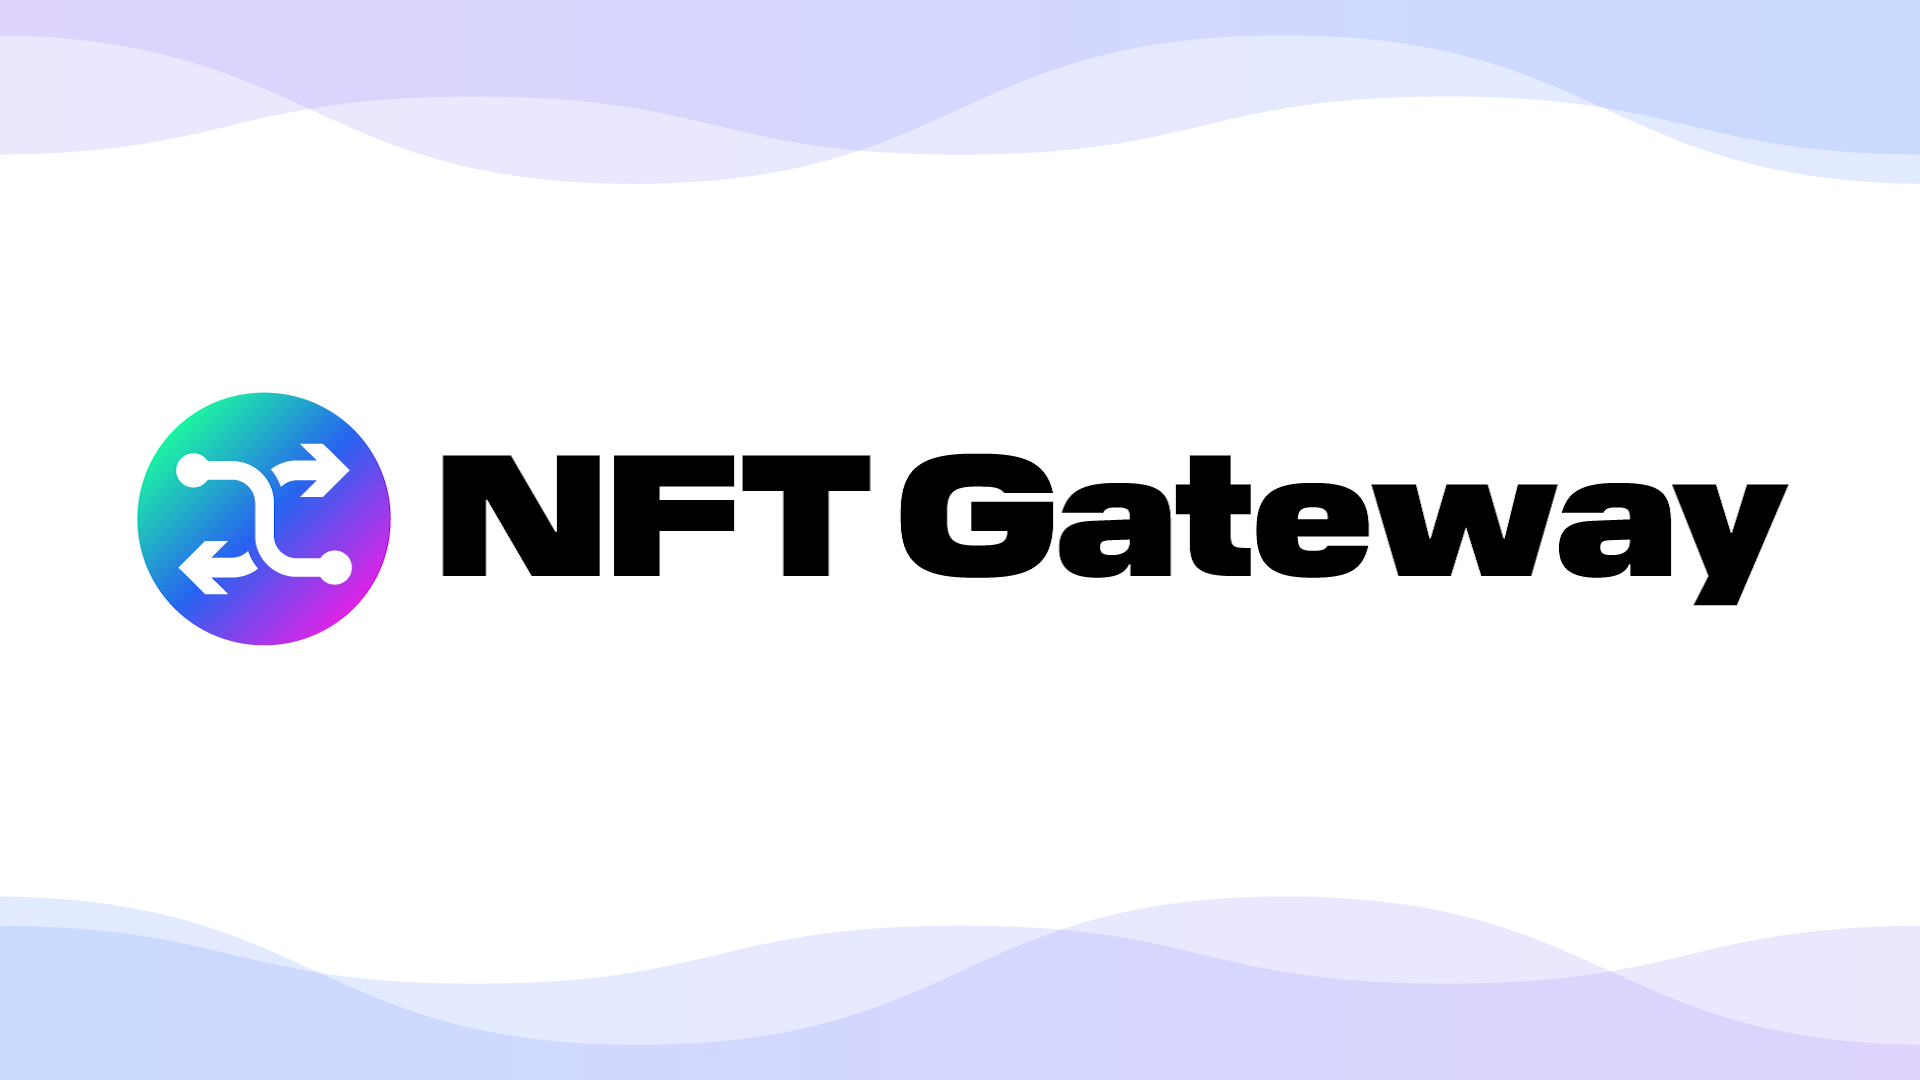 株式会社ブラック、NFT所有者のみアクセス可能なWebサイトを作れる「NFT Gateway」をリリース